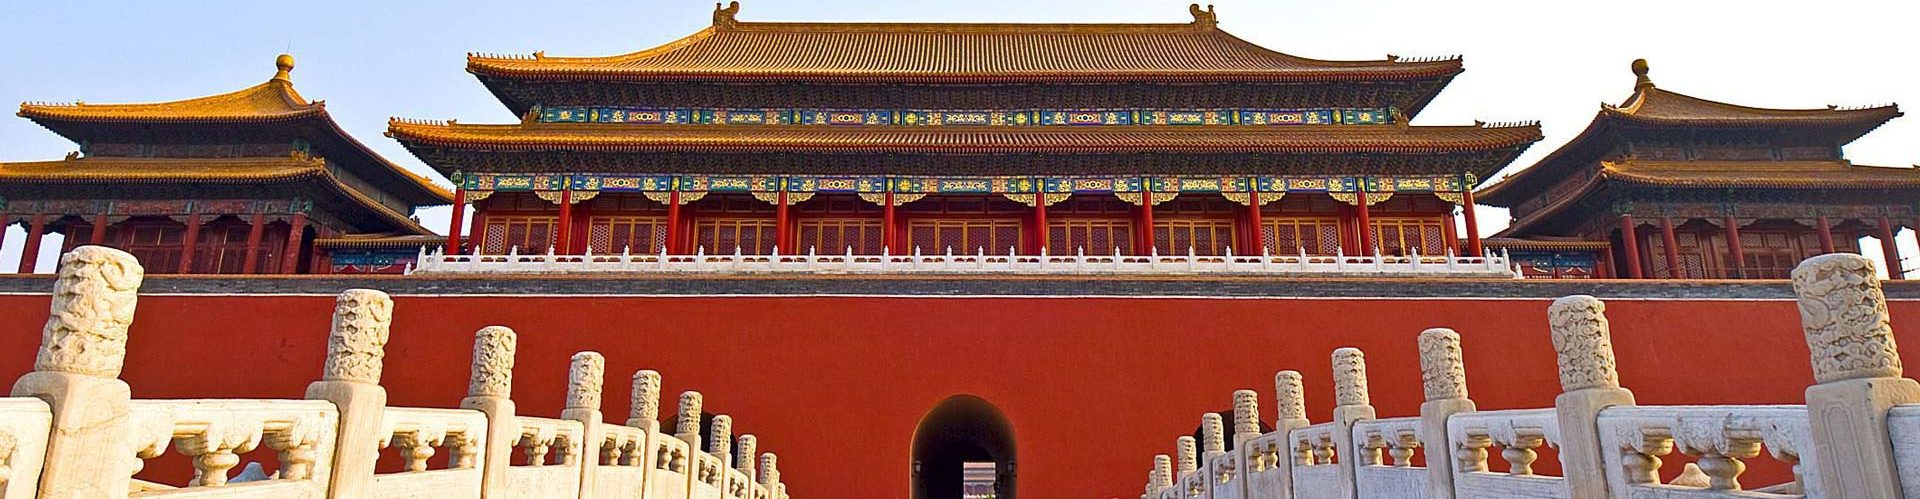 Beijing Forbidden City Ticket